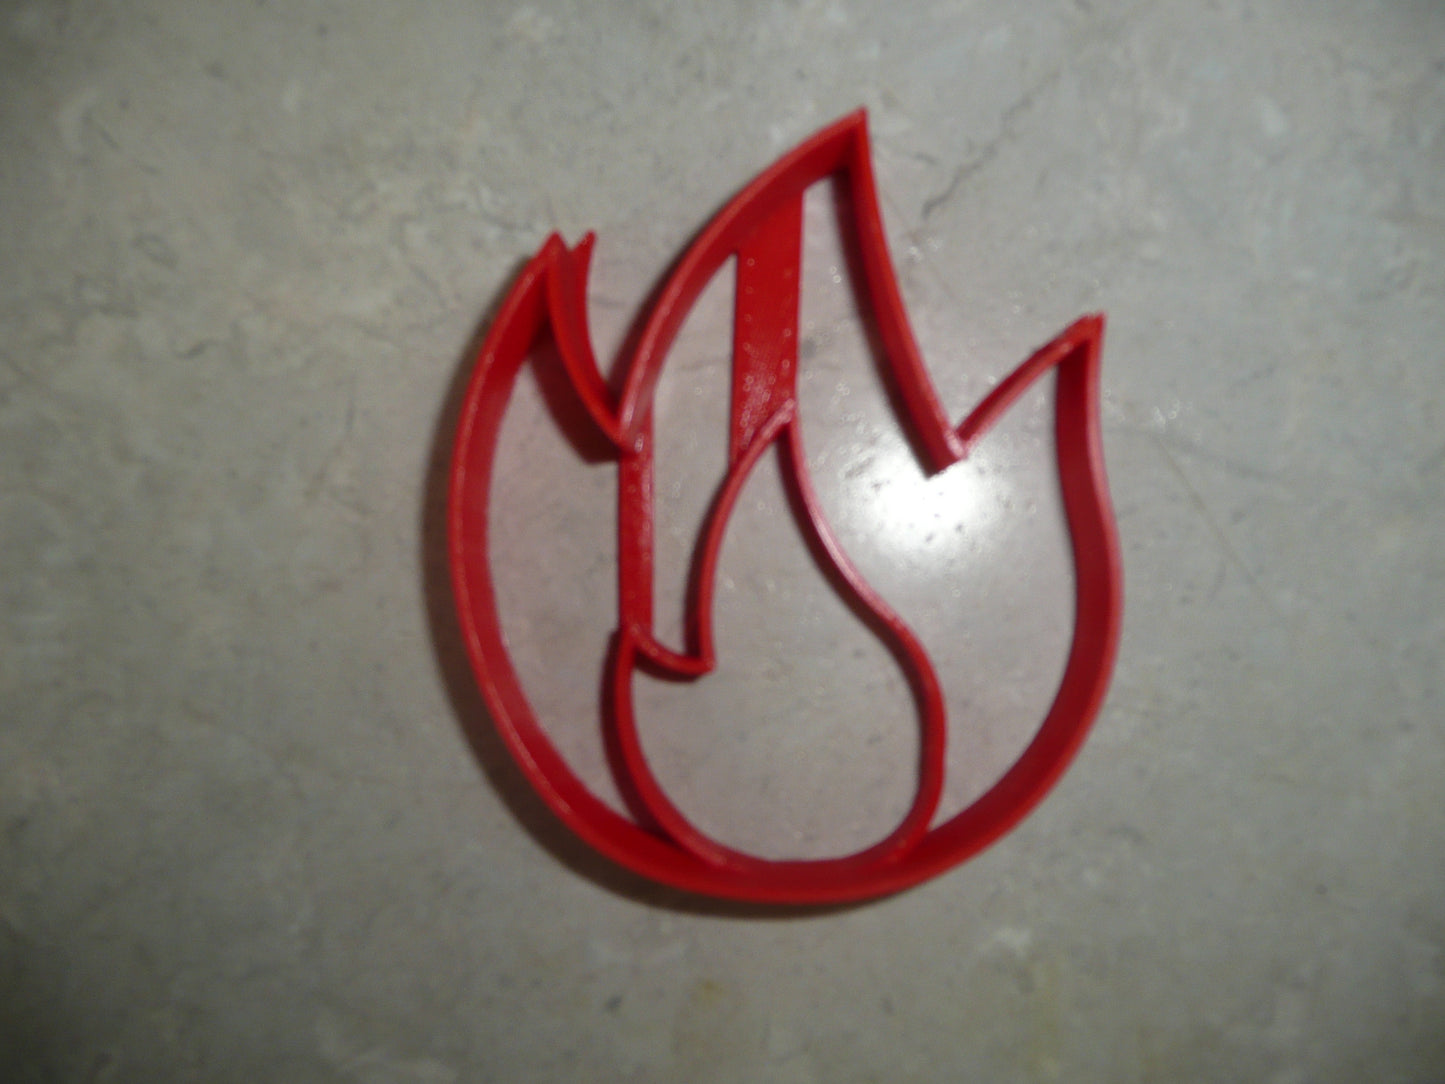 6x Bonfire Flames Fondant Cutter Cupcake Topper 1.75 IN USA FD5075